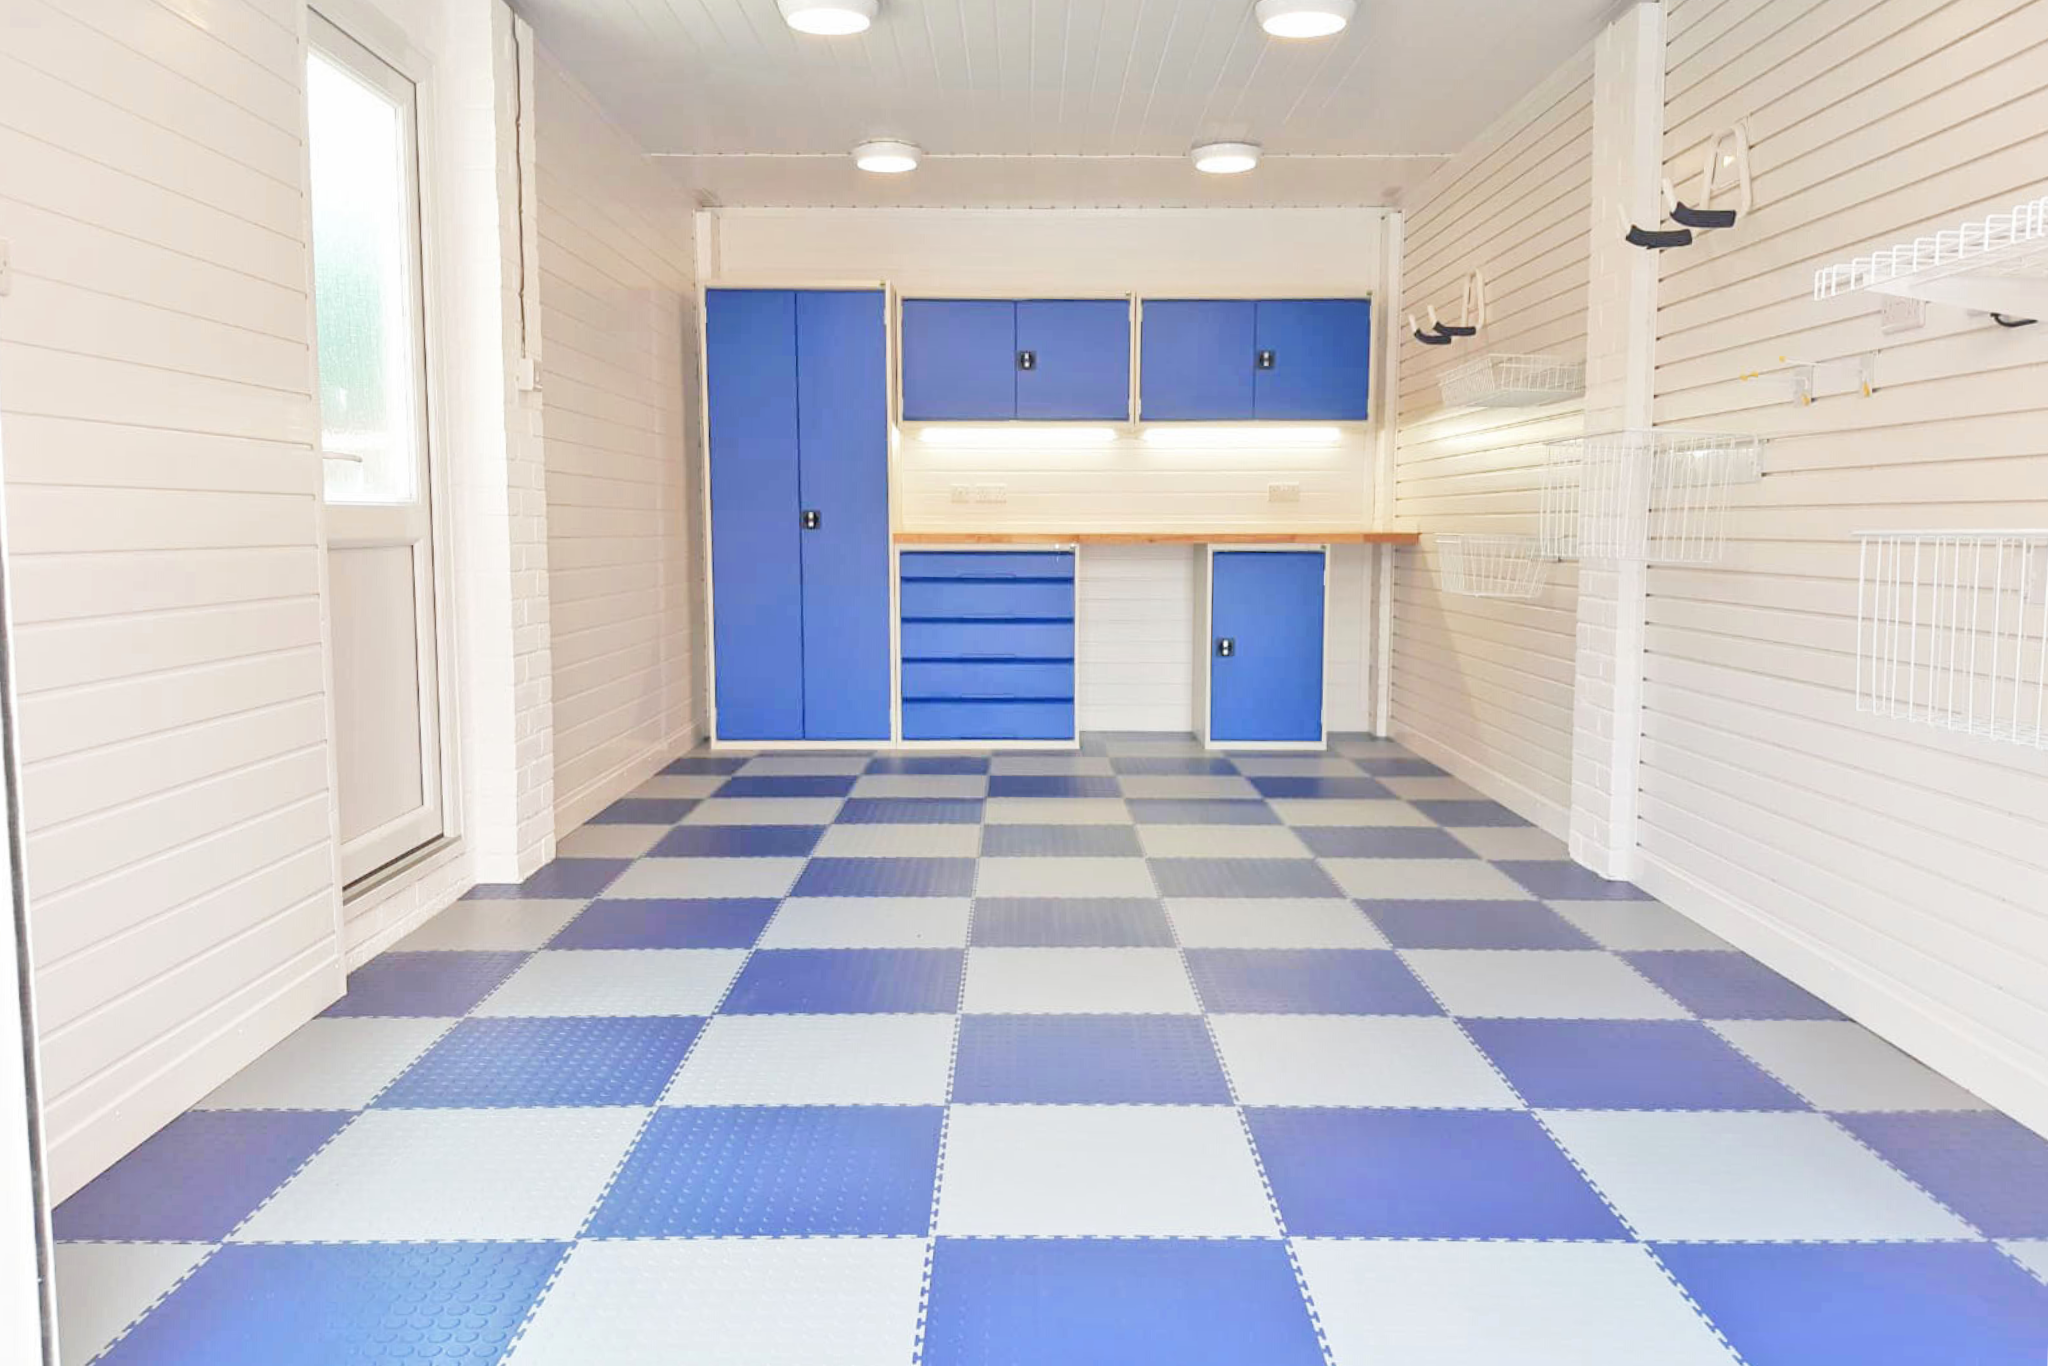 Checkerboard pattern effect on this garage floor